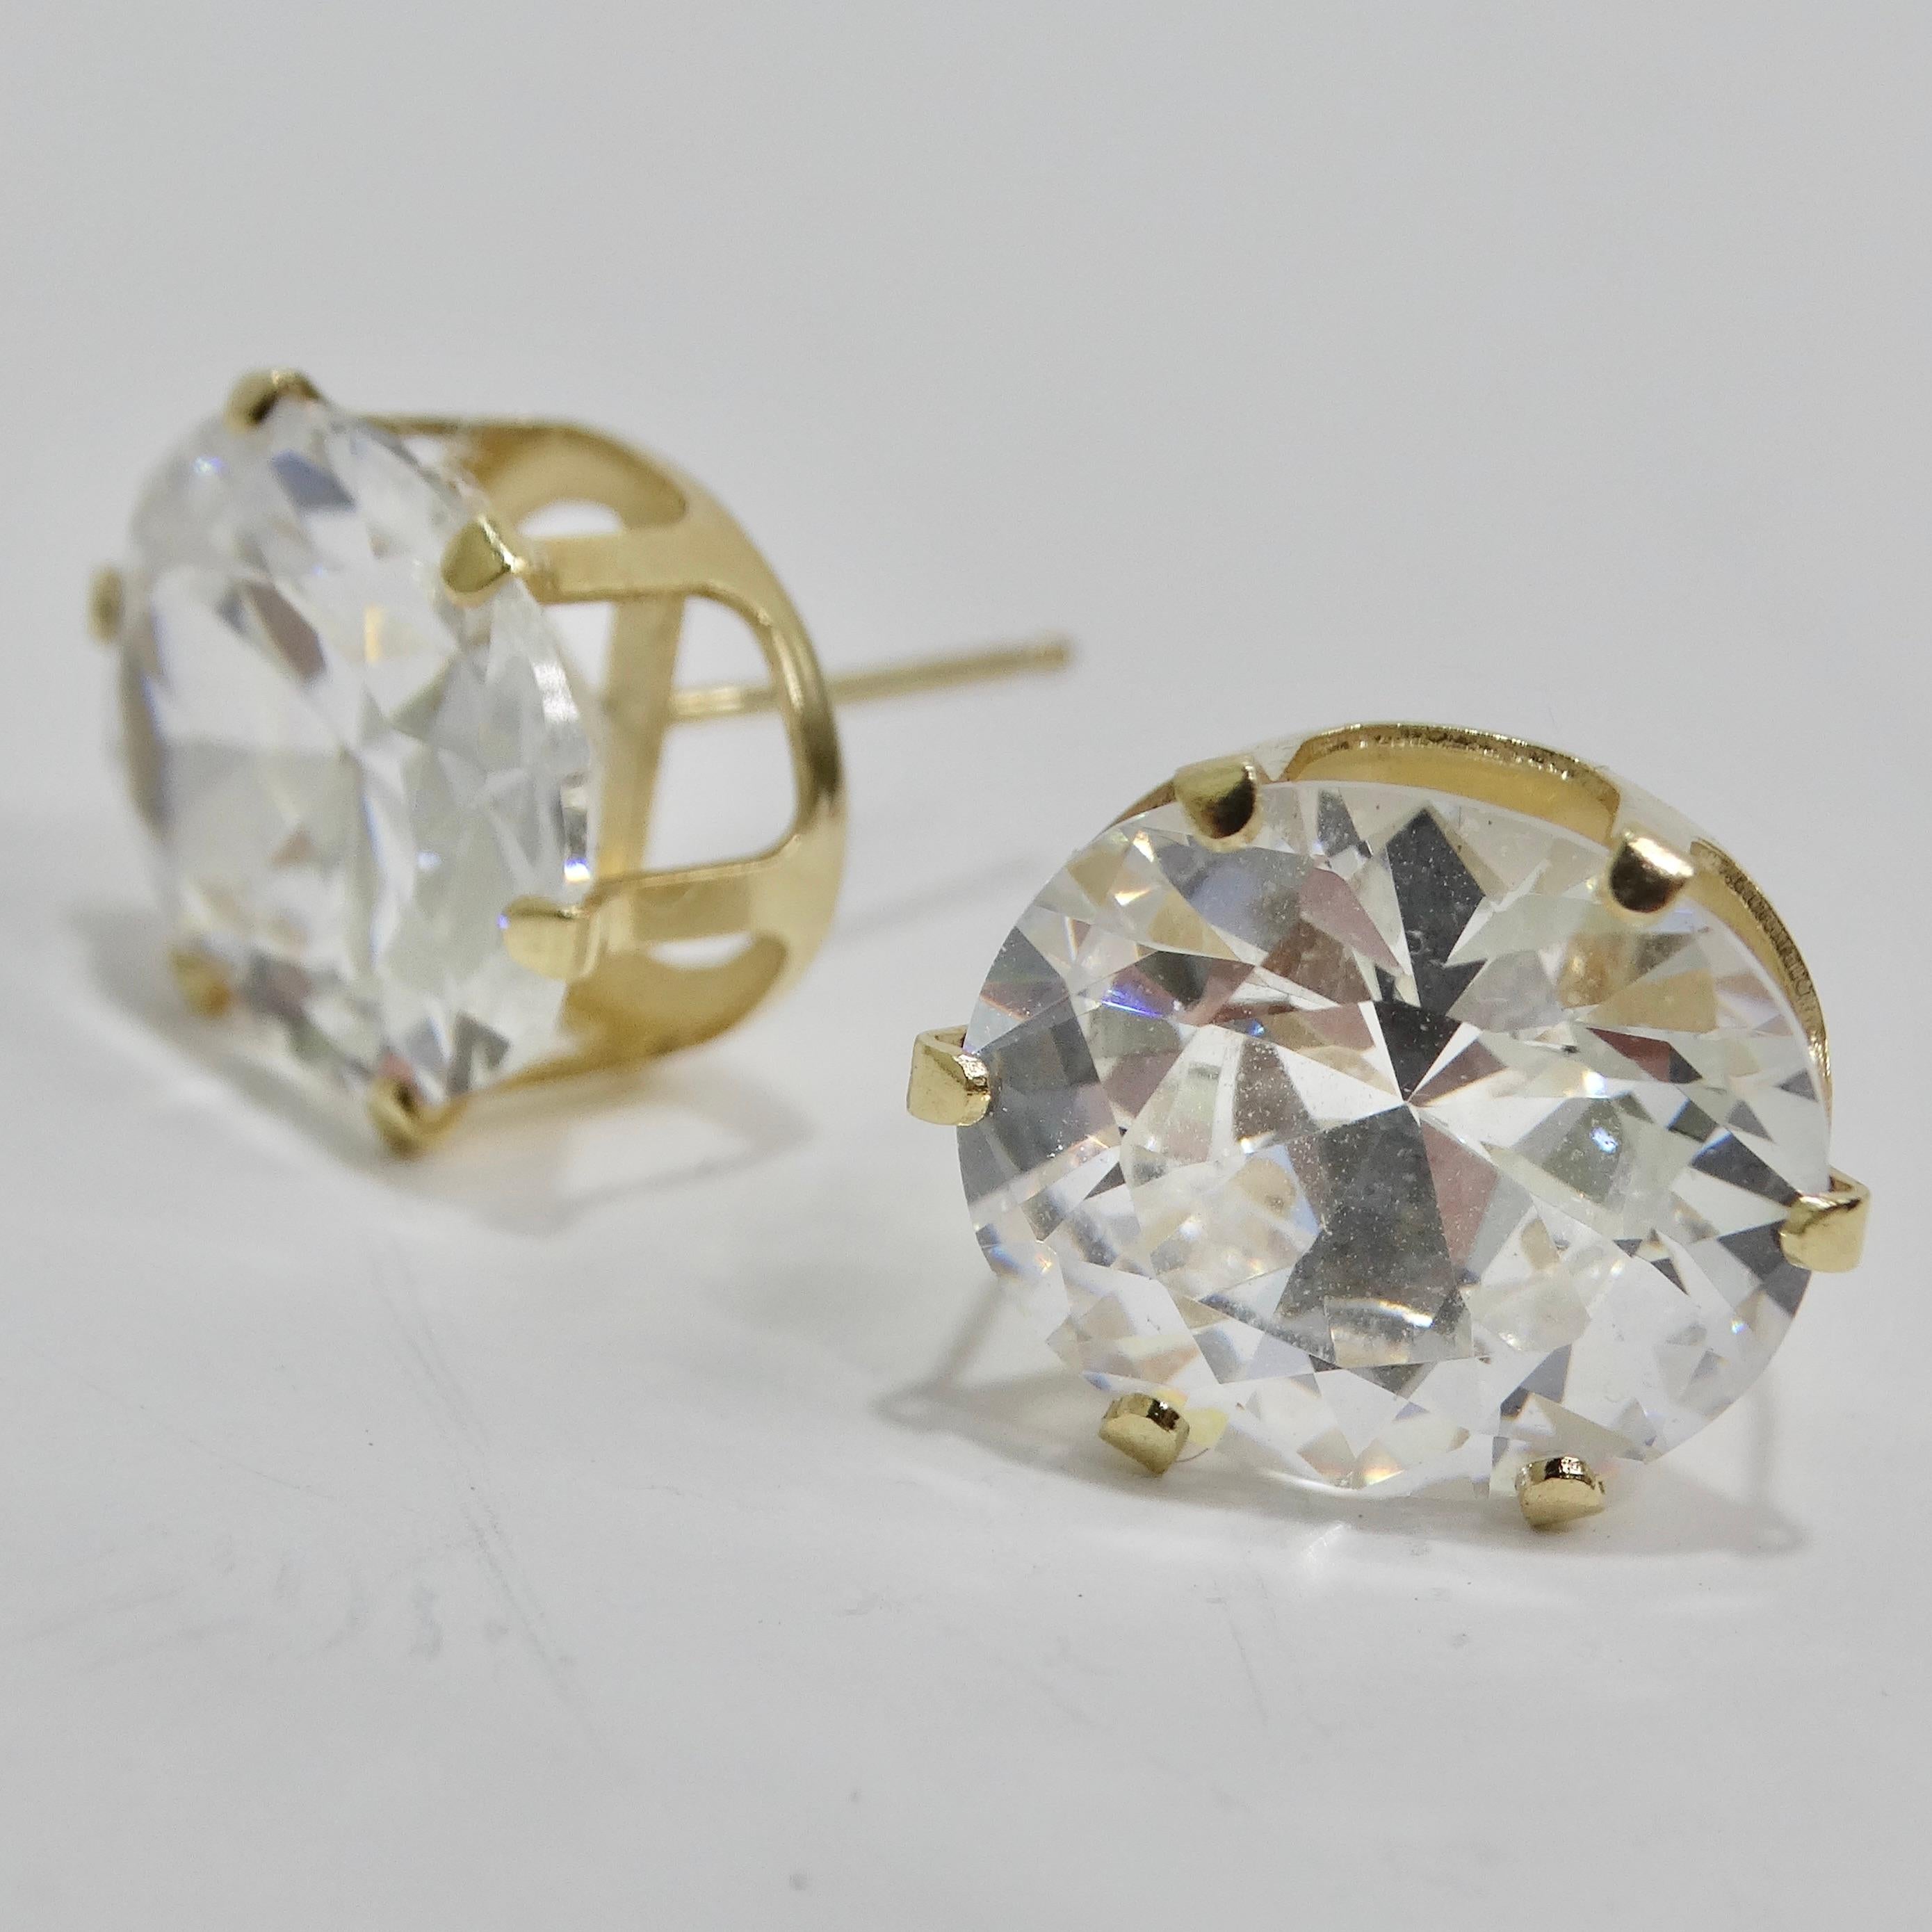 Die exquisiten 18K vergoldeten Swarovski Synthetic Round Emerald Cut Crystal Stud Earrings sind eine zeitlose und elegante Ergänzung Ihrer Schmucksammlung. Ungefähr 4 Karat pro Stück! Diese klassischen, mit Swarovski-Kristallen besetzten Ohrstecker